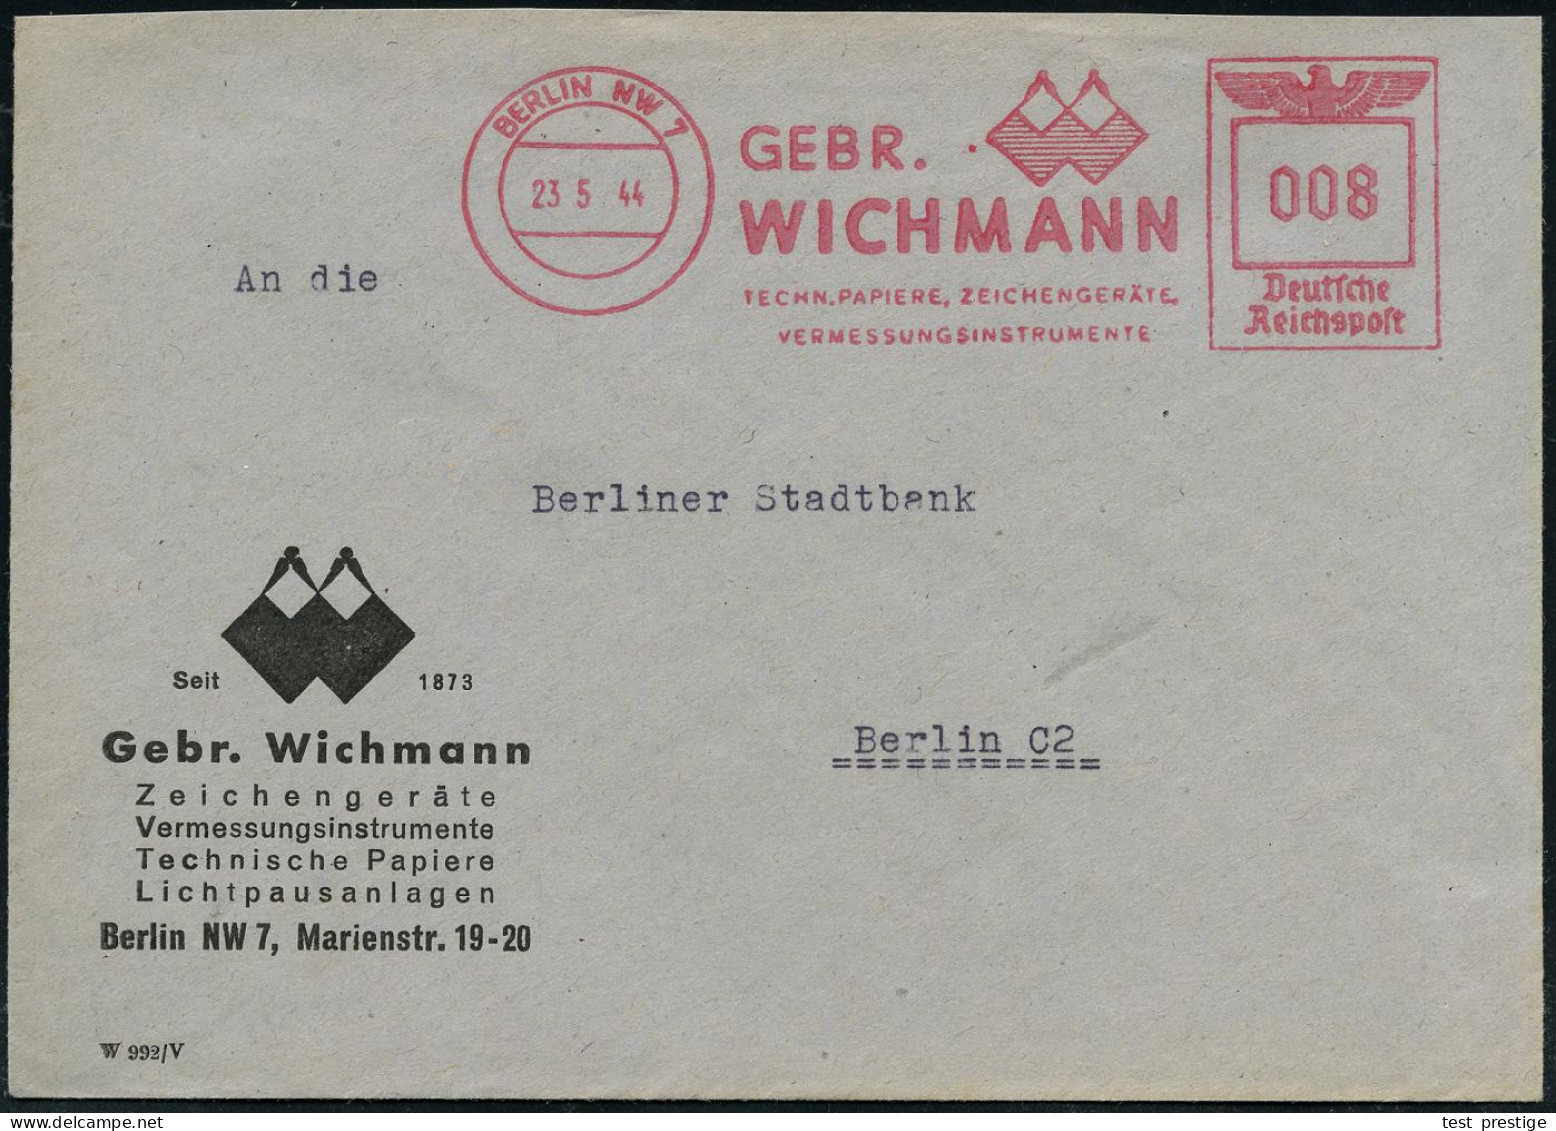 BERLIN NW7/ GEBR./ WICHMANN/ TECHN.PAPIERE, ZEICHENGERÄTE/ VERMESSUNGSINSTRUMENTE 1944 (25.5.) AFS Francotyp "Reichsadle - Geography